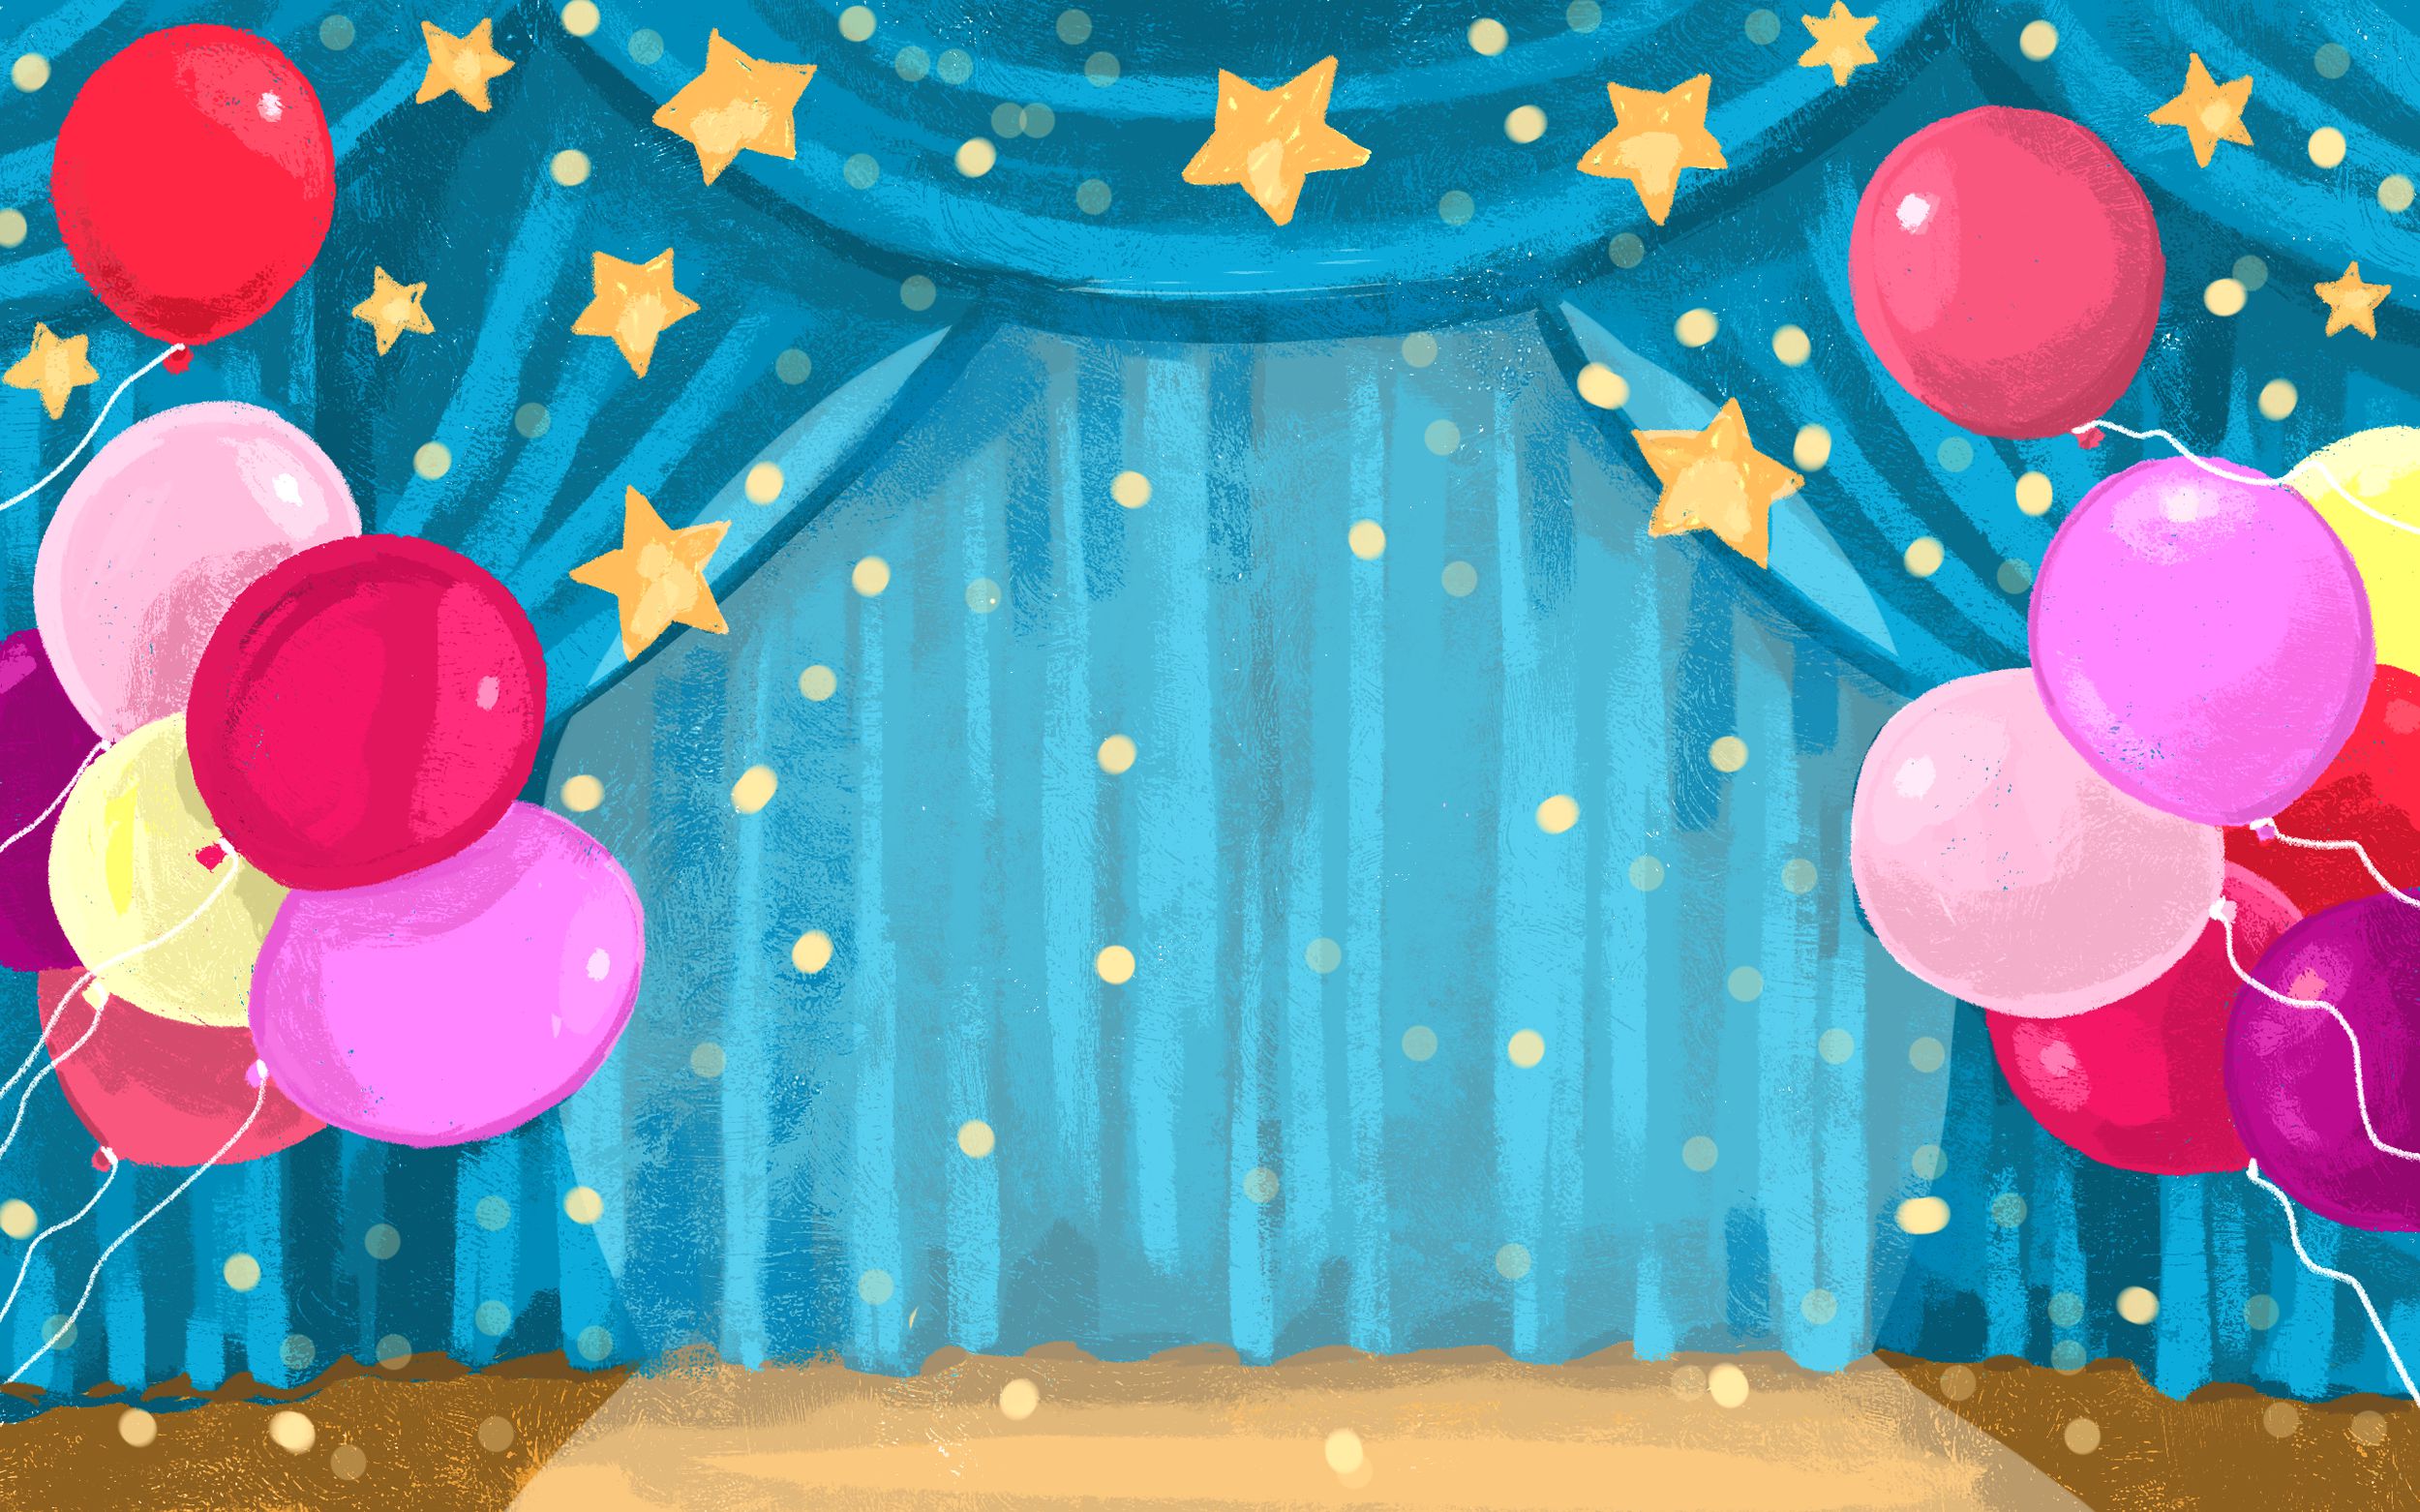 Tại sao không thử tổ chức một buổi tiệc sinh nhật trực tuyến tuyệt vời? Và phông nền sinh nhật sẽ giúp cho bạn tạo nên không gian đầy màu sắc và sinh động tại Zoom. Hãy bật phông nền này và cảm nhận một buổi tiệc từ xa thật tuyệt vời!